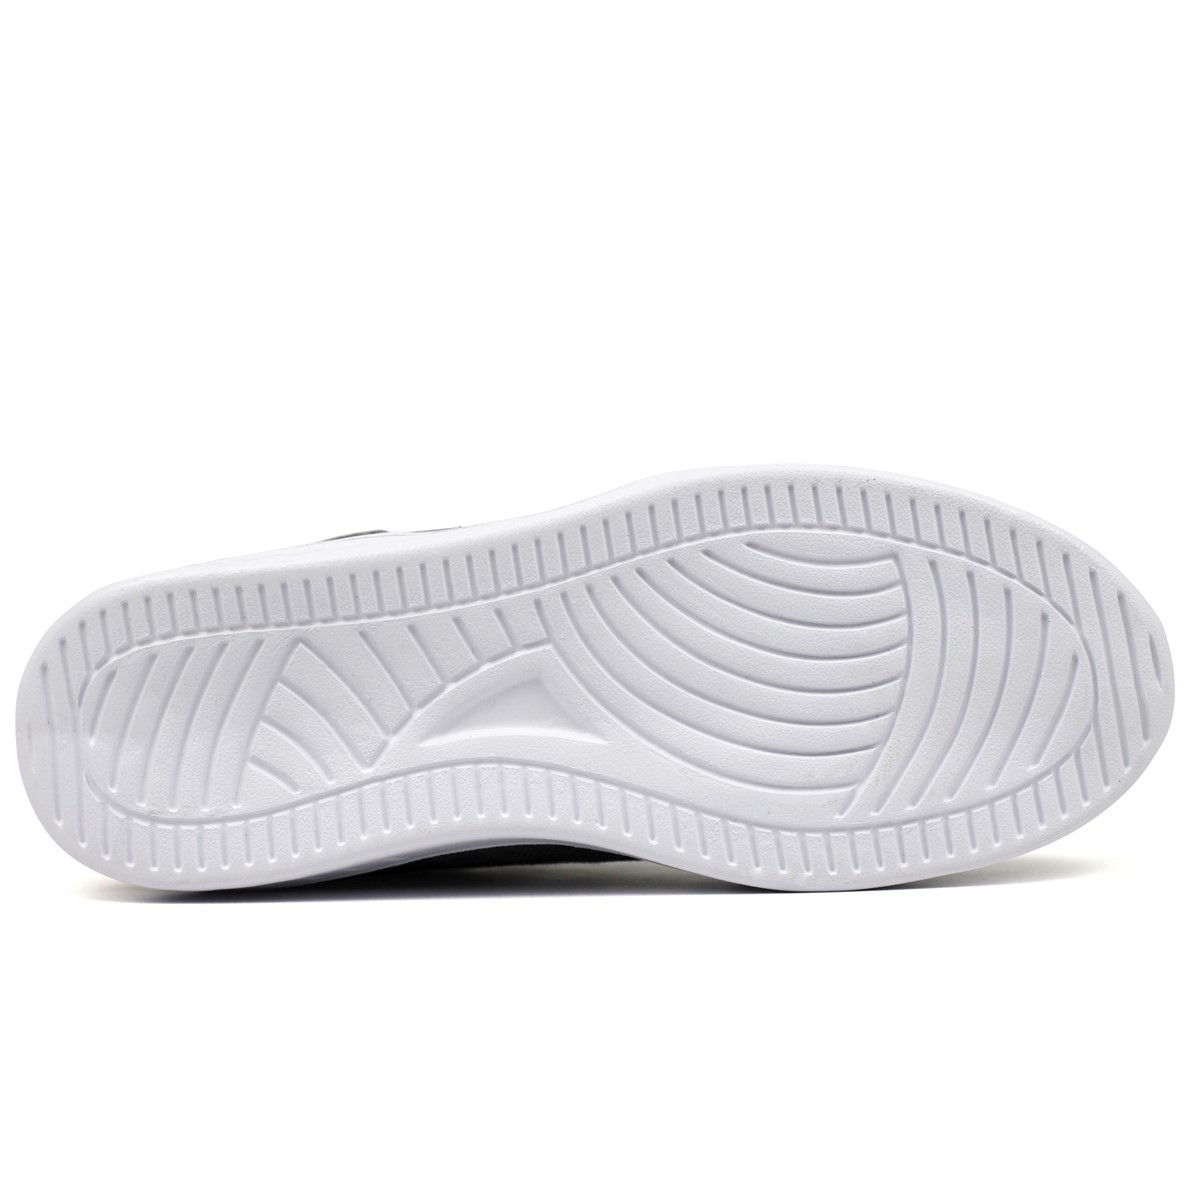 Flo Crosberg JAWA Spor Sneaker Ayakkabı Erkek Antrasit Beyaz. 4